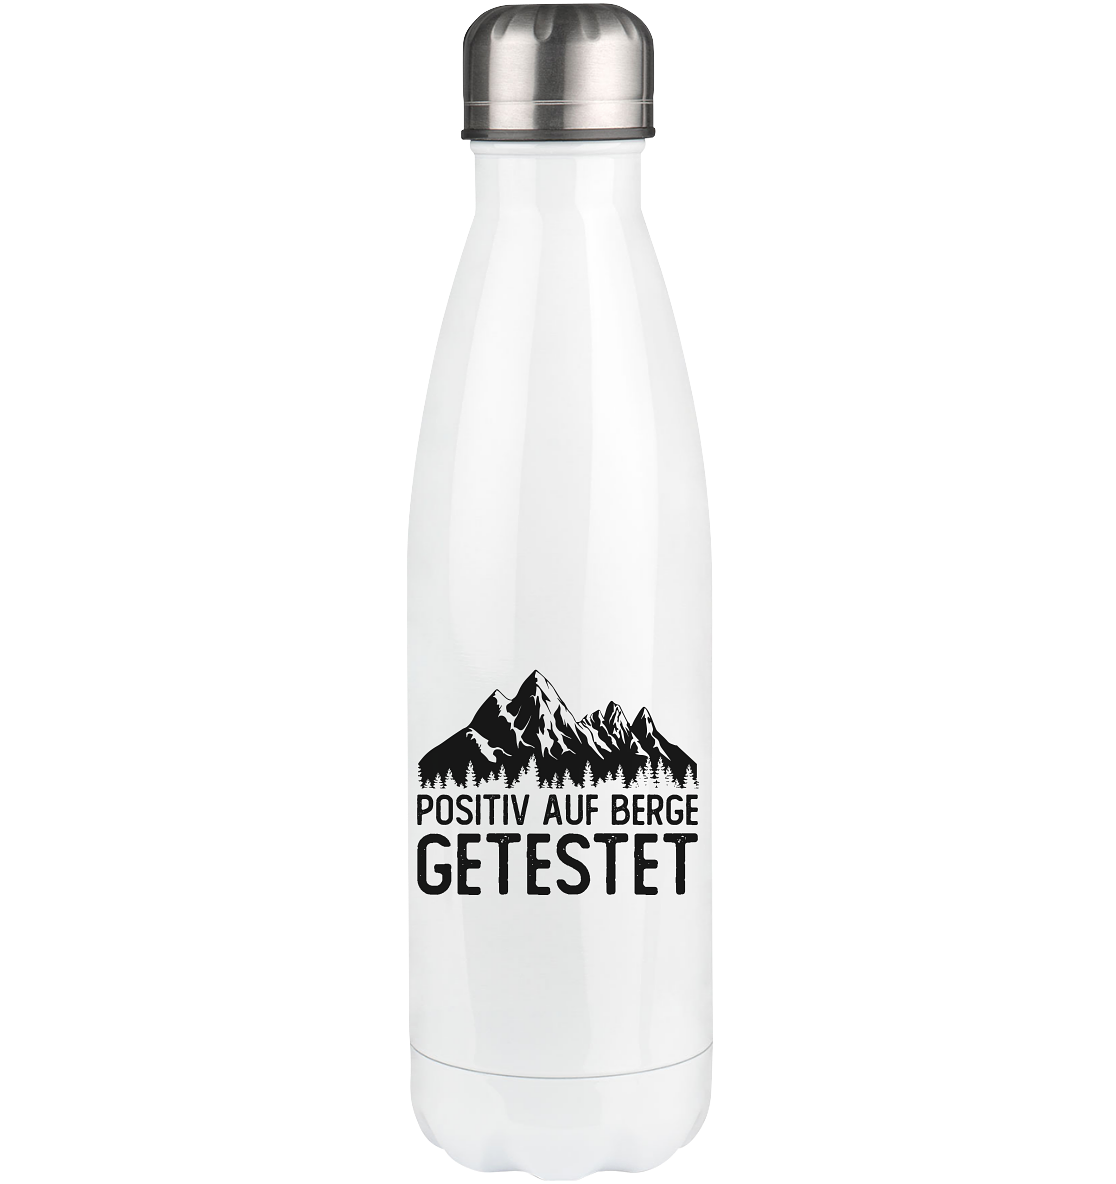 Positiv auf Berge getestet - Edelstahl Thermosflasche berge 500ml